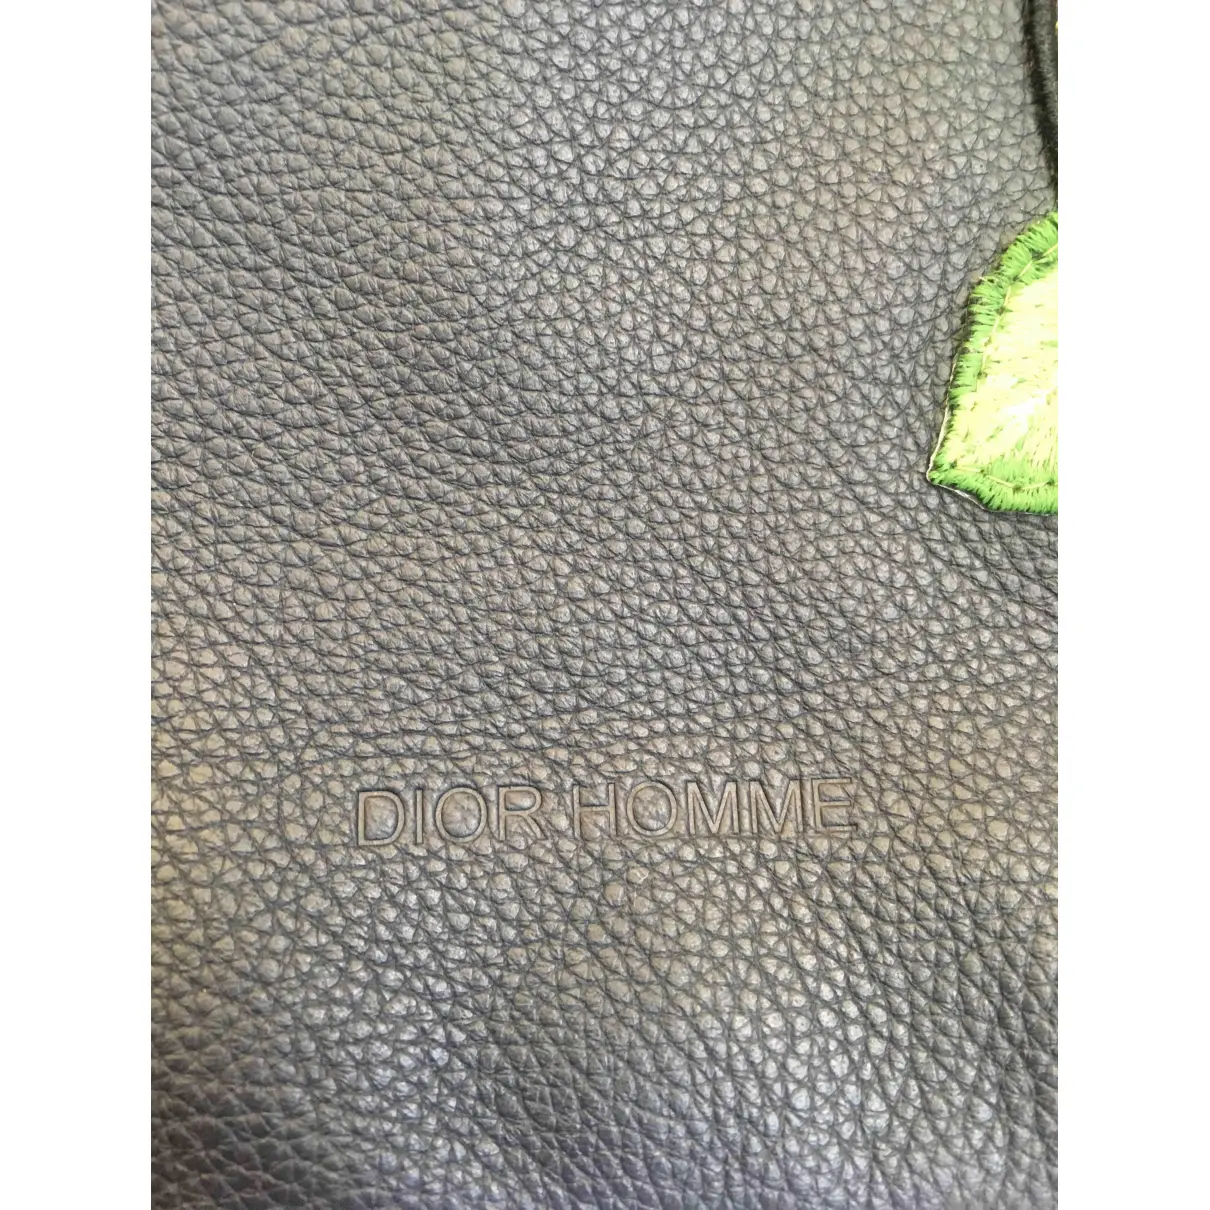 Buy Dior Homme Leather bag online